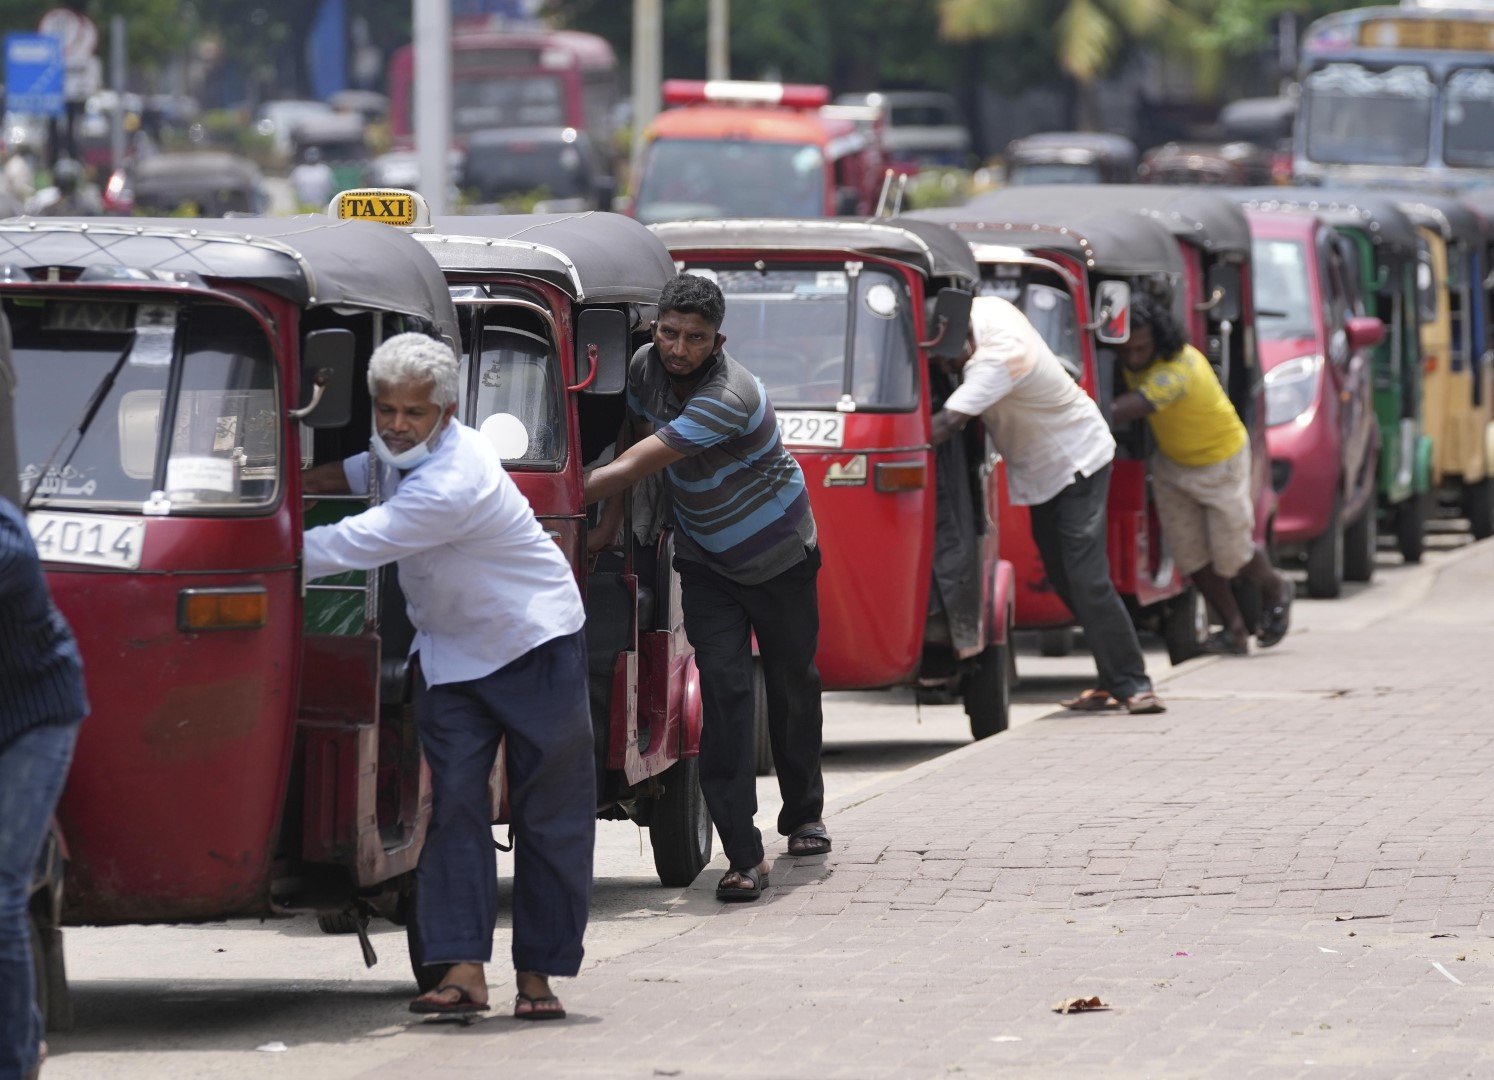 Шофьори на рикши се редят на опашка, за да заредят бензин от бензиностанция в Коломбо, Шри Ланка, сряда, 13 април 2022 г.